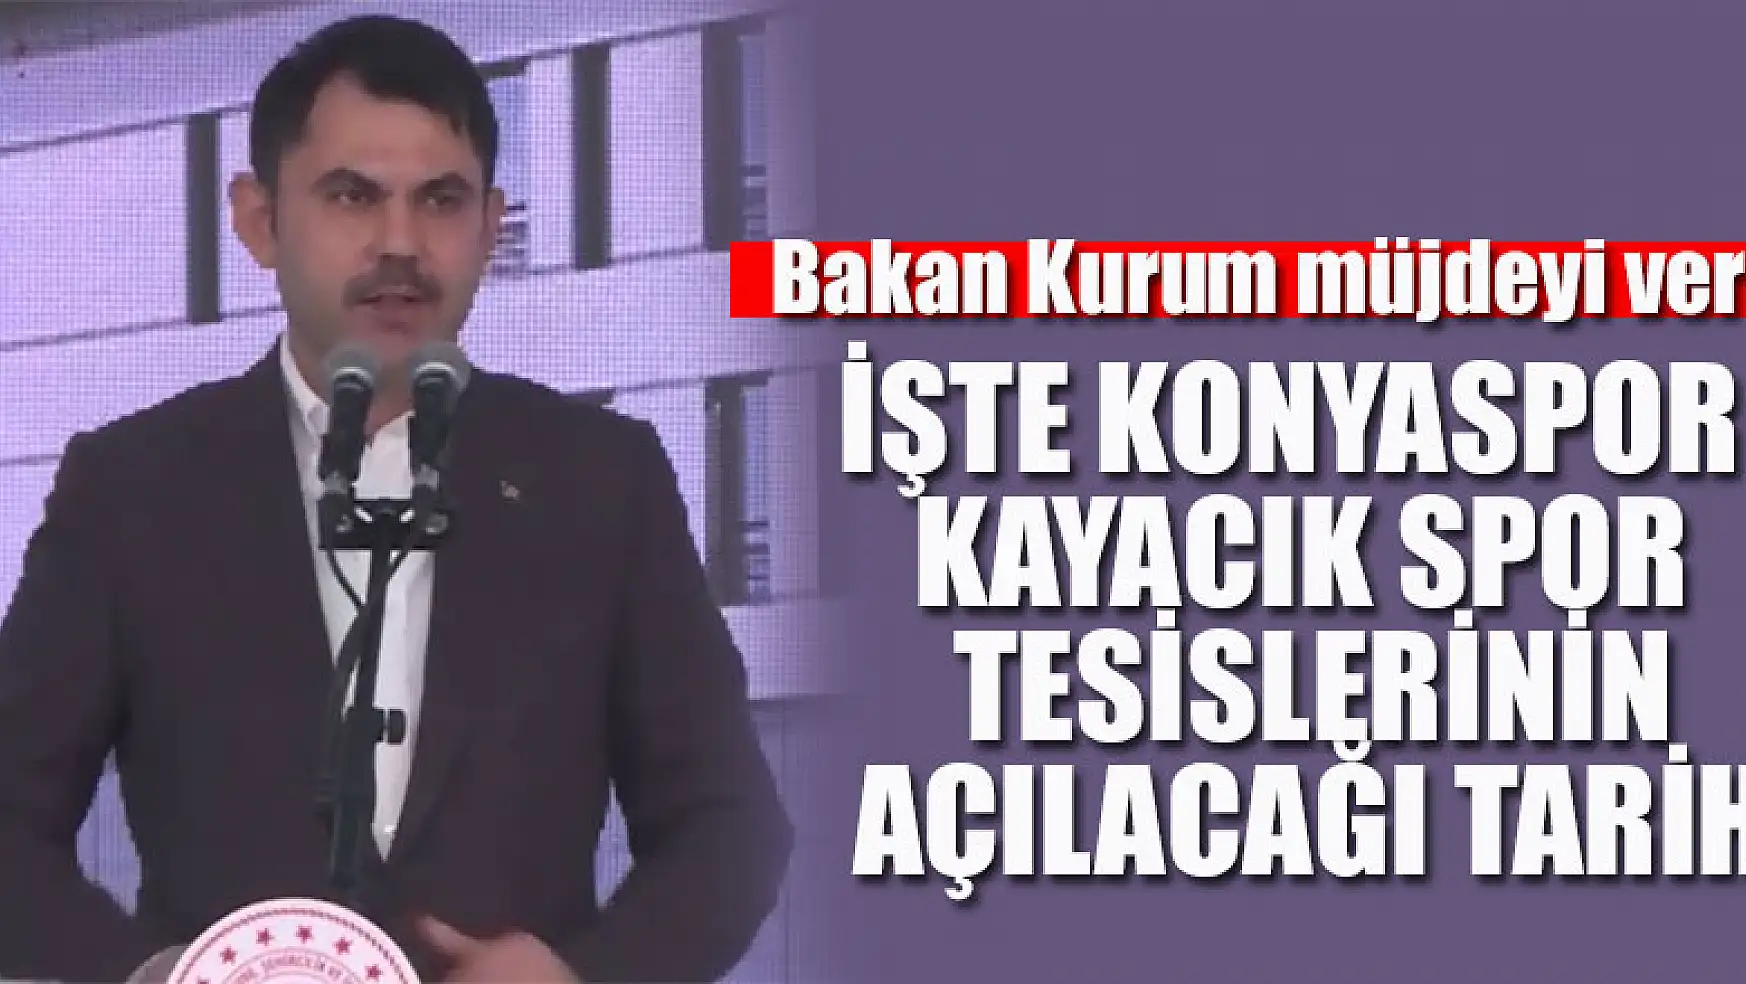 Bakan Kurum Konyaspor Kayacık Spor Tesislerinin açılacağı tarihi açıkladı